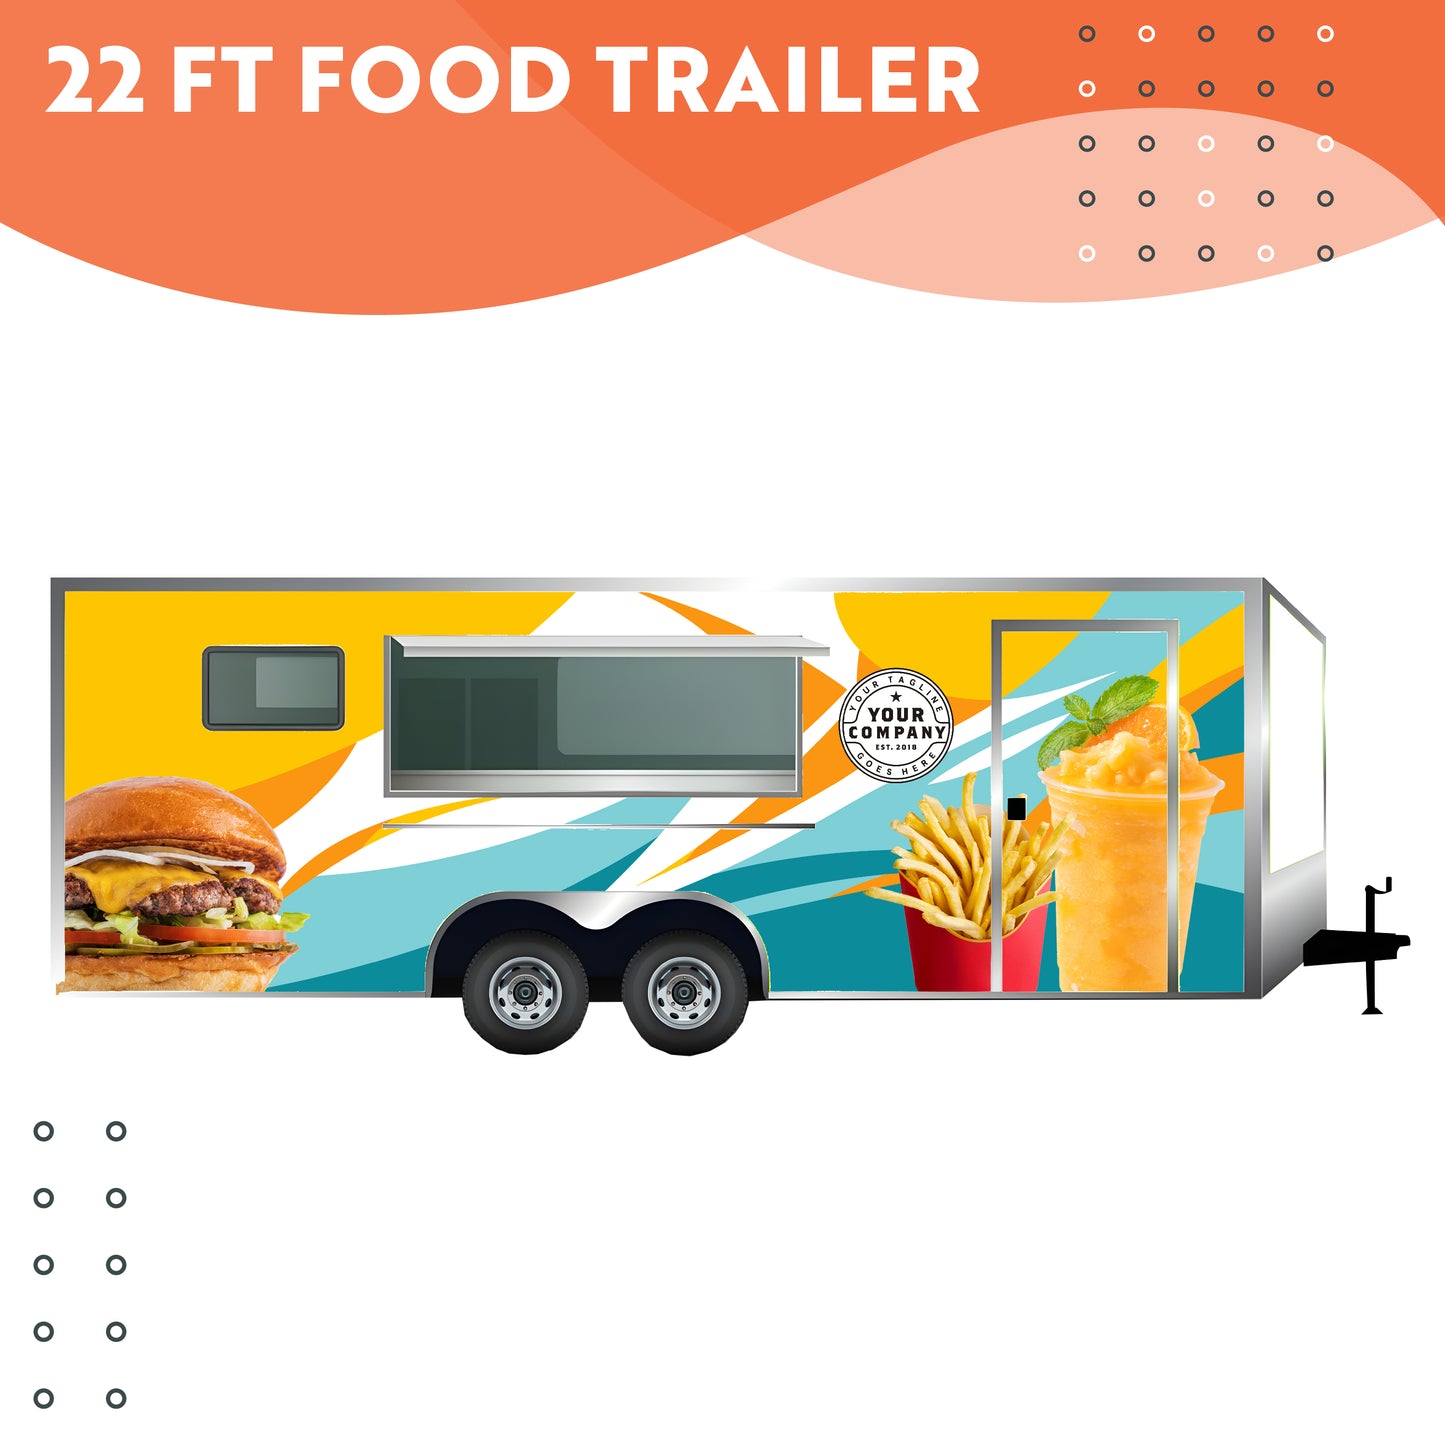 22 ft Food Trailer